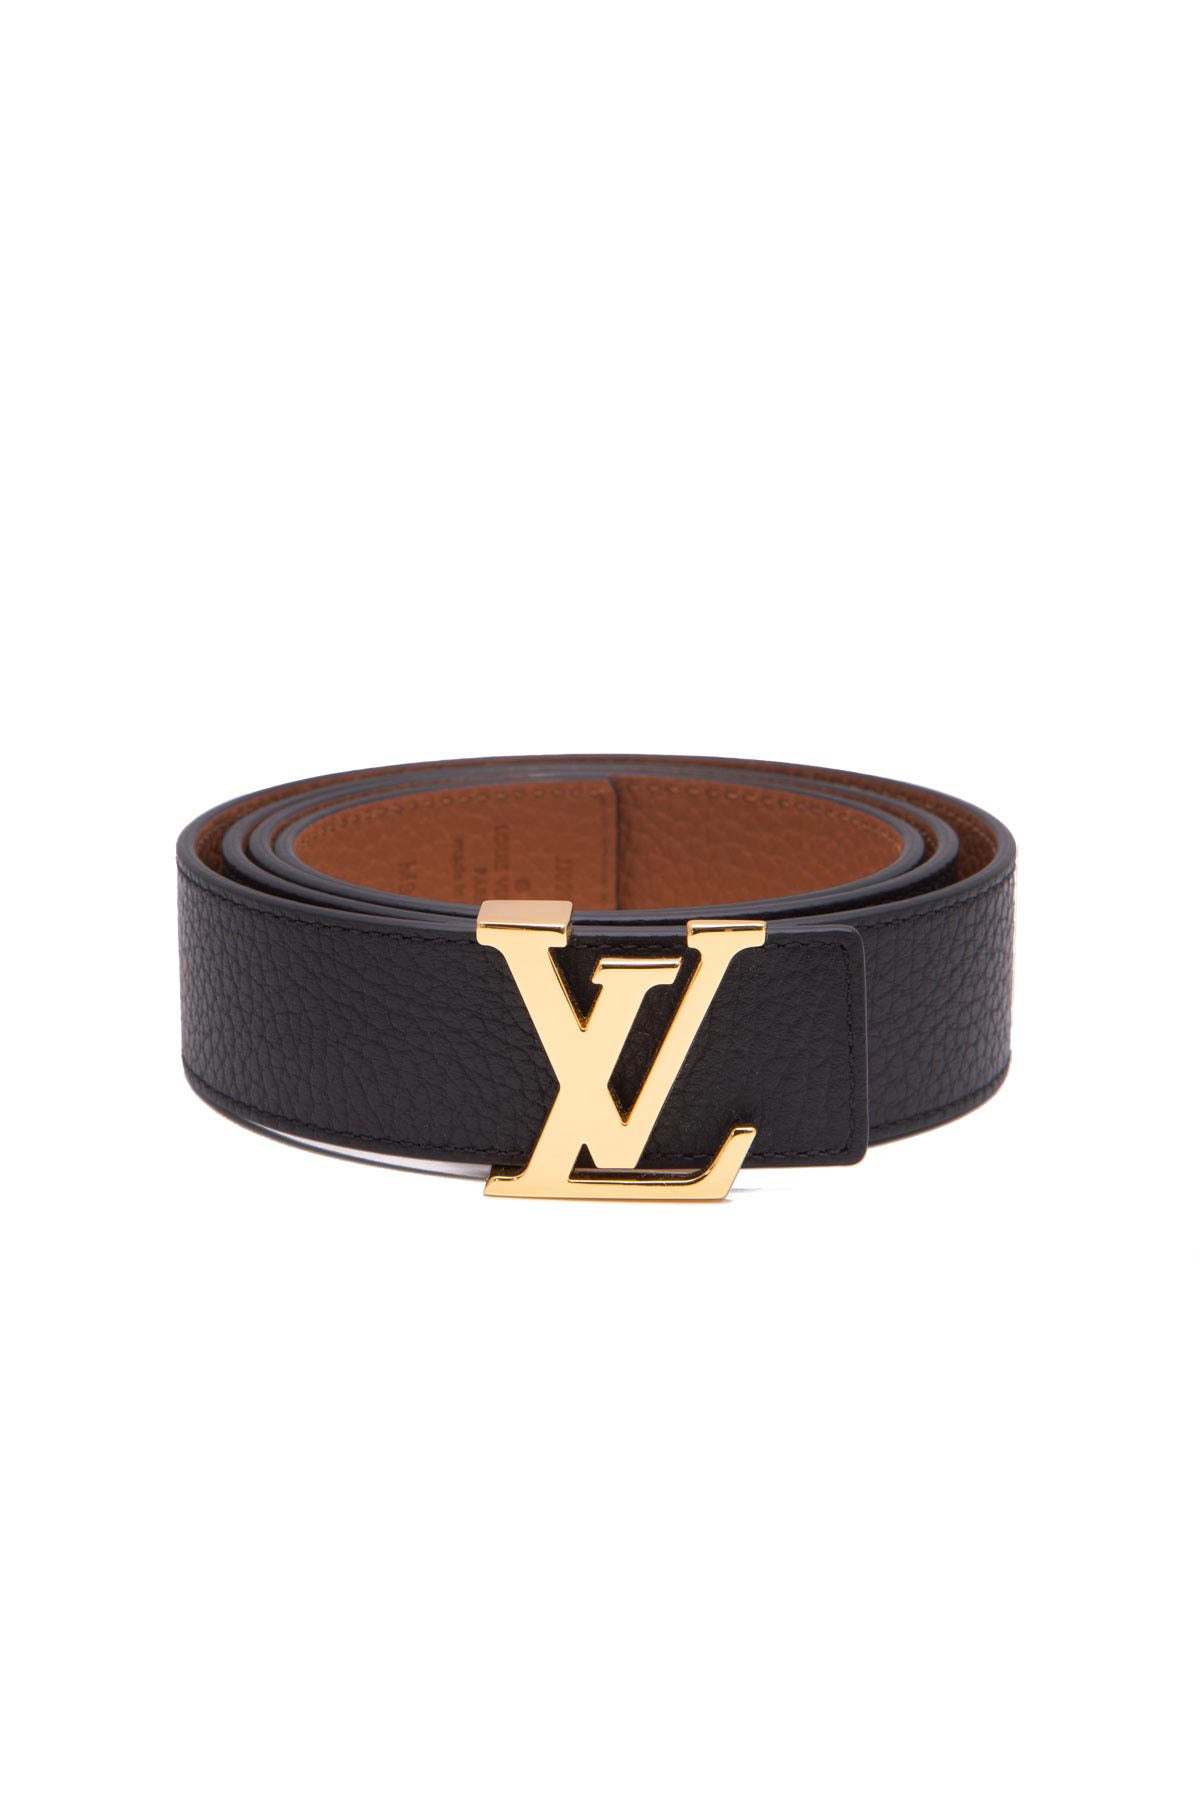 Louis Vuitton Men's Belt - Size 38